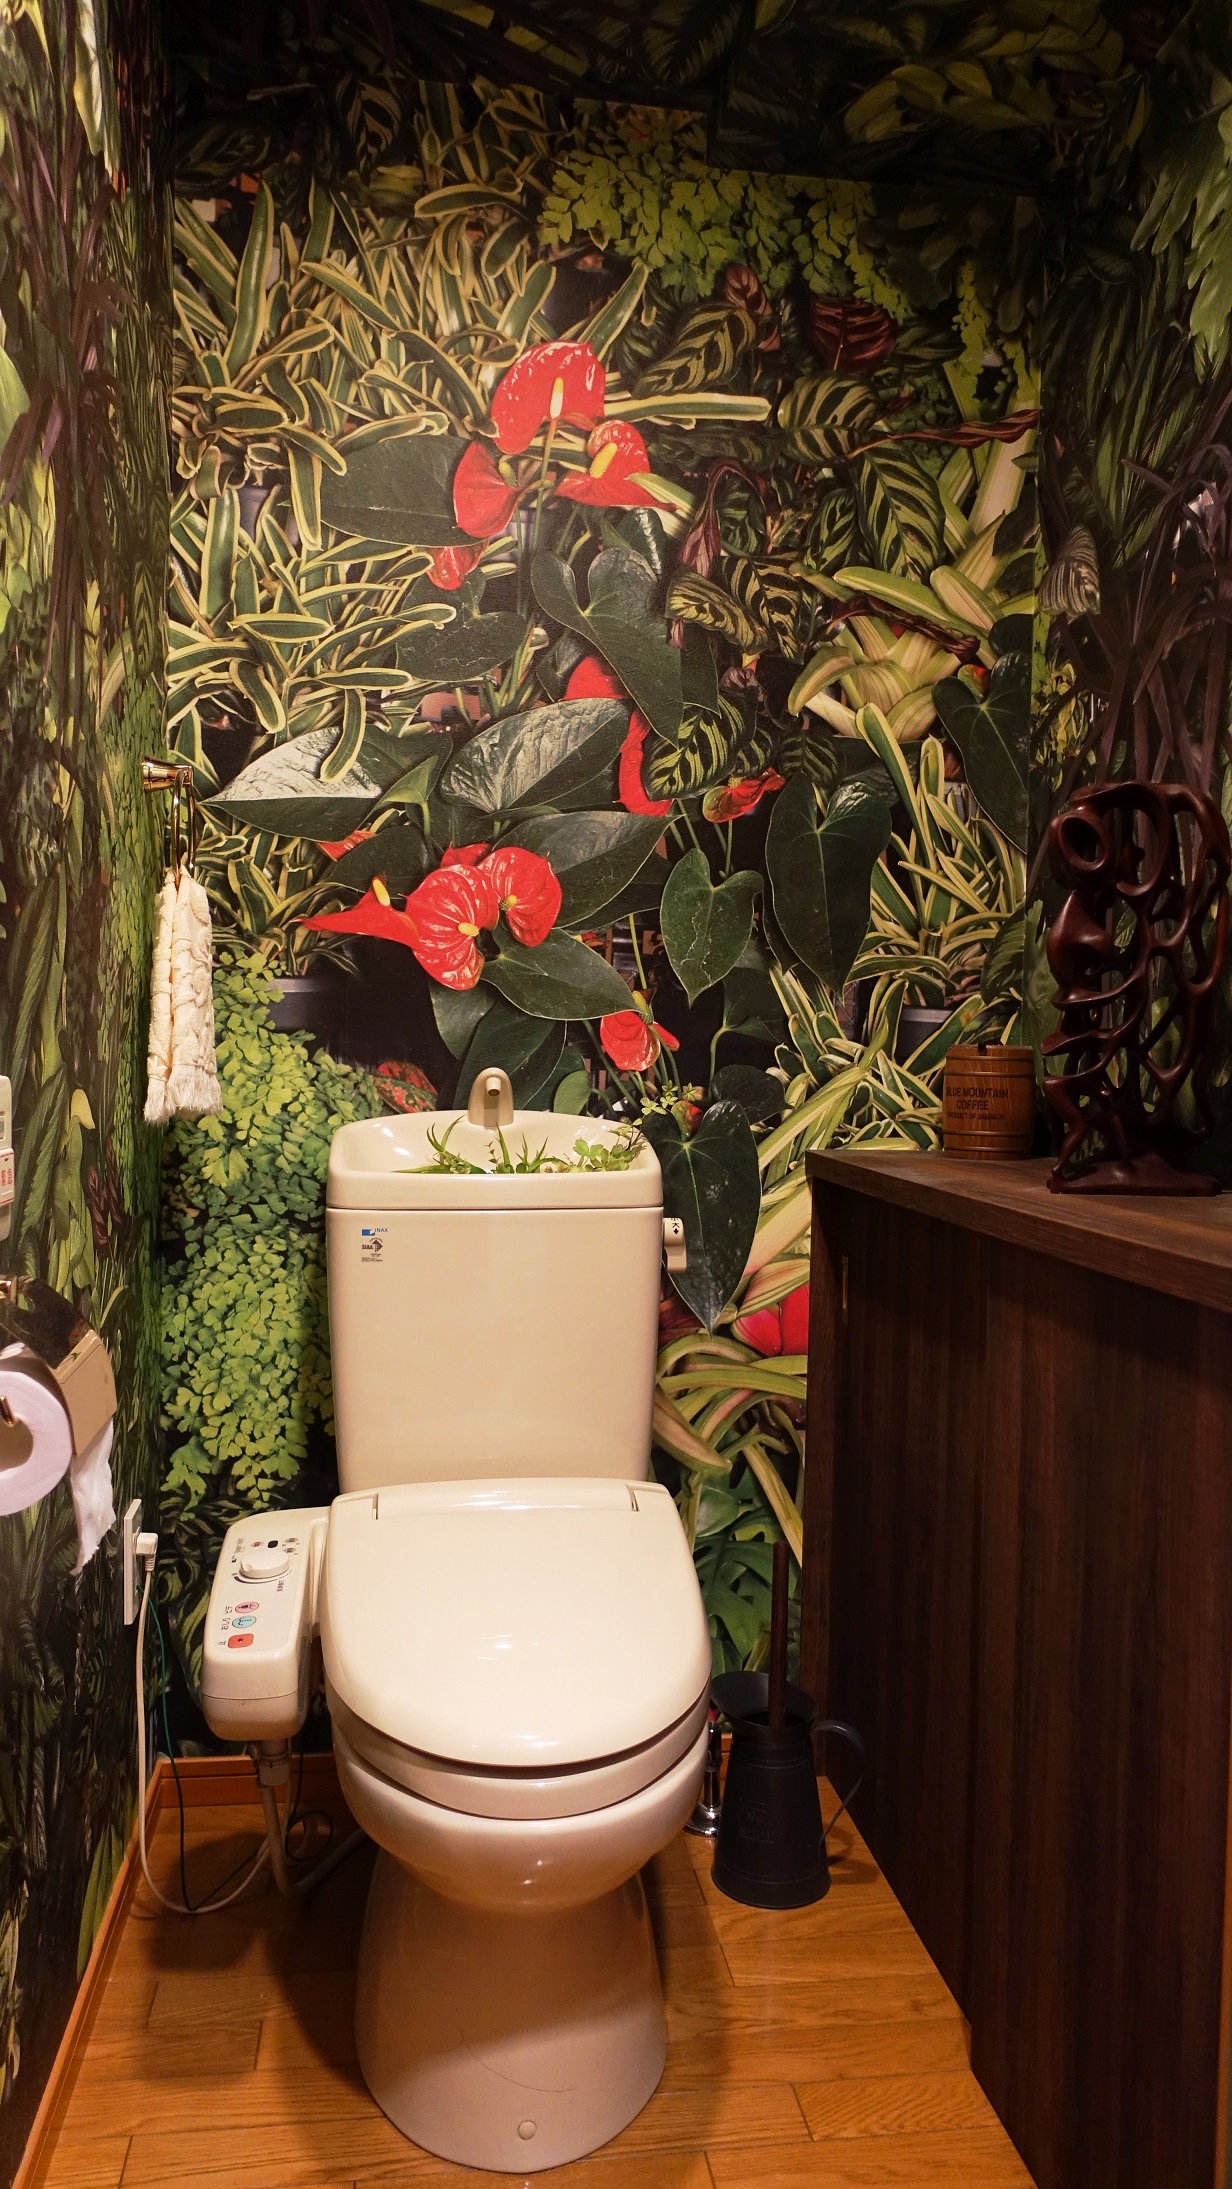 変だけど居心地の良いトイレ リフォーム費を節約してジャングルトイレに Jangle Toilet Change The Interior Of The Toilet To A Completely Different Image スイス人 レネの日本暮らし Renejapan Com